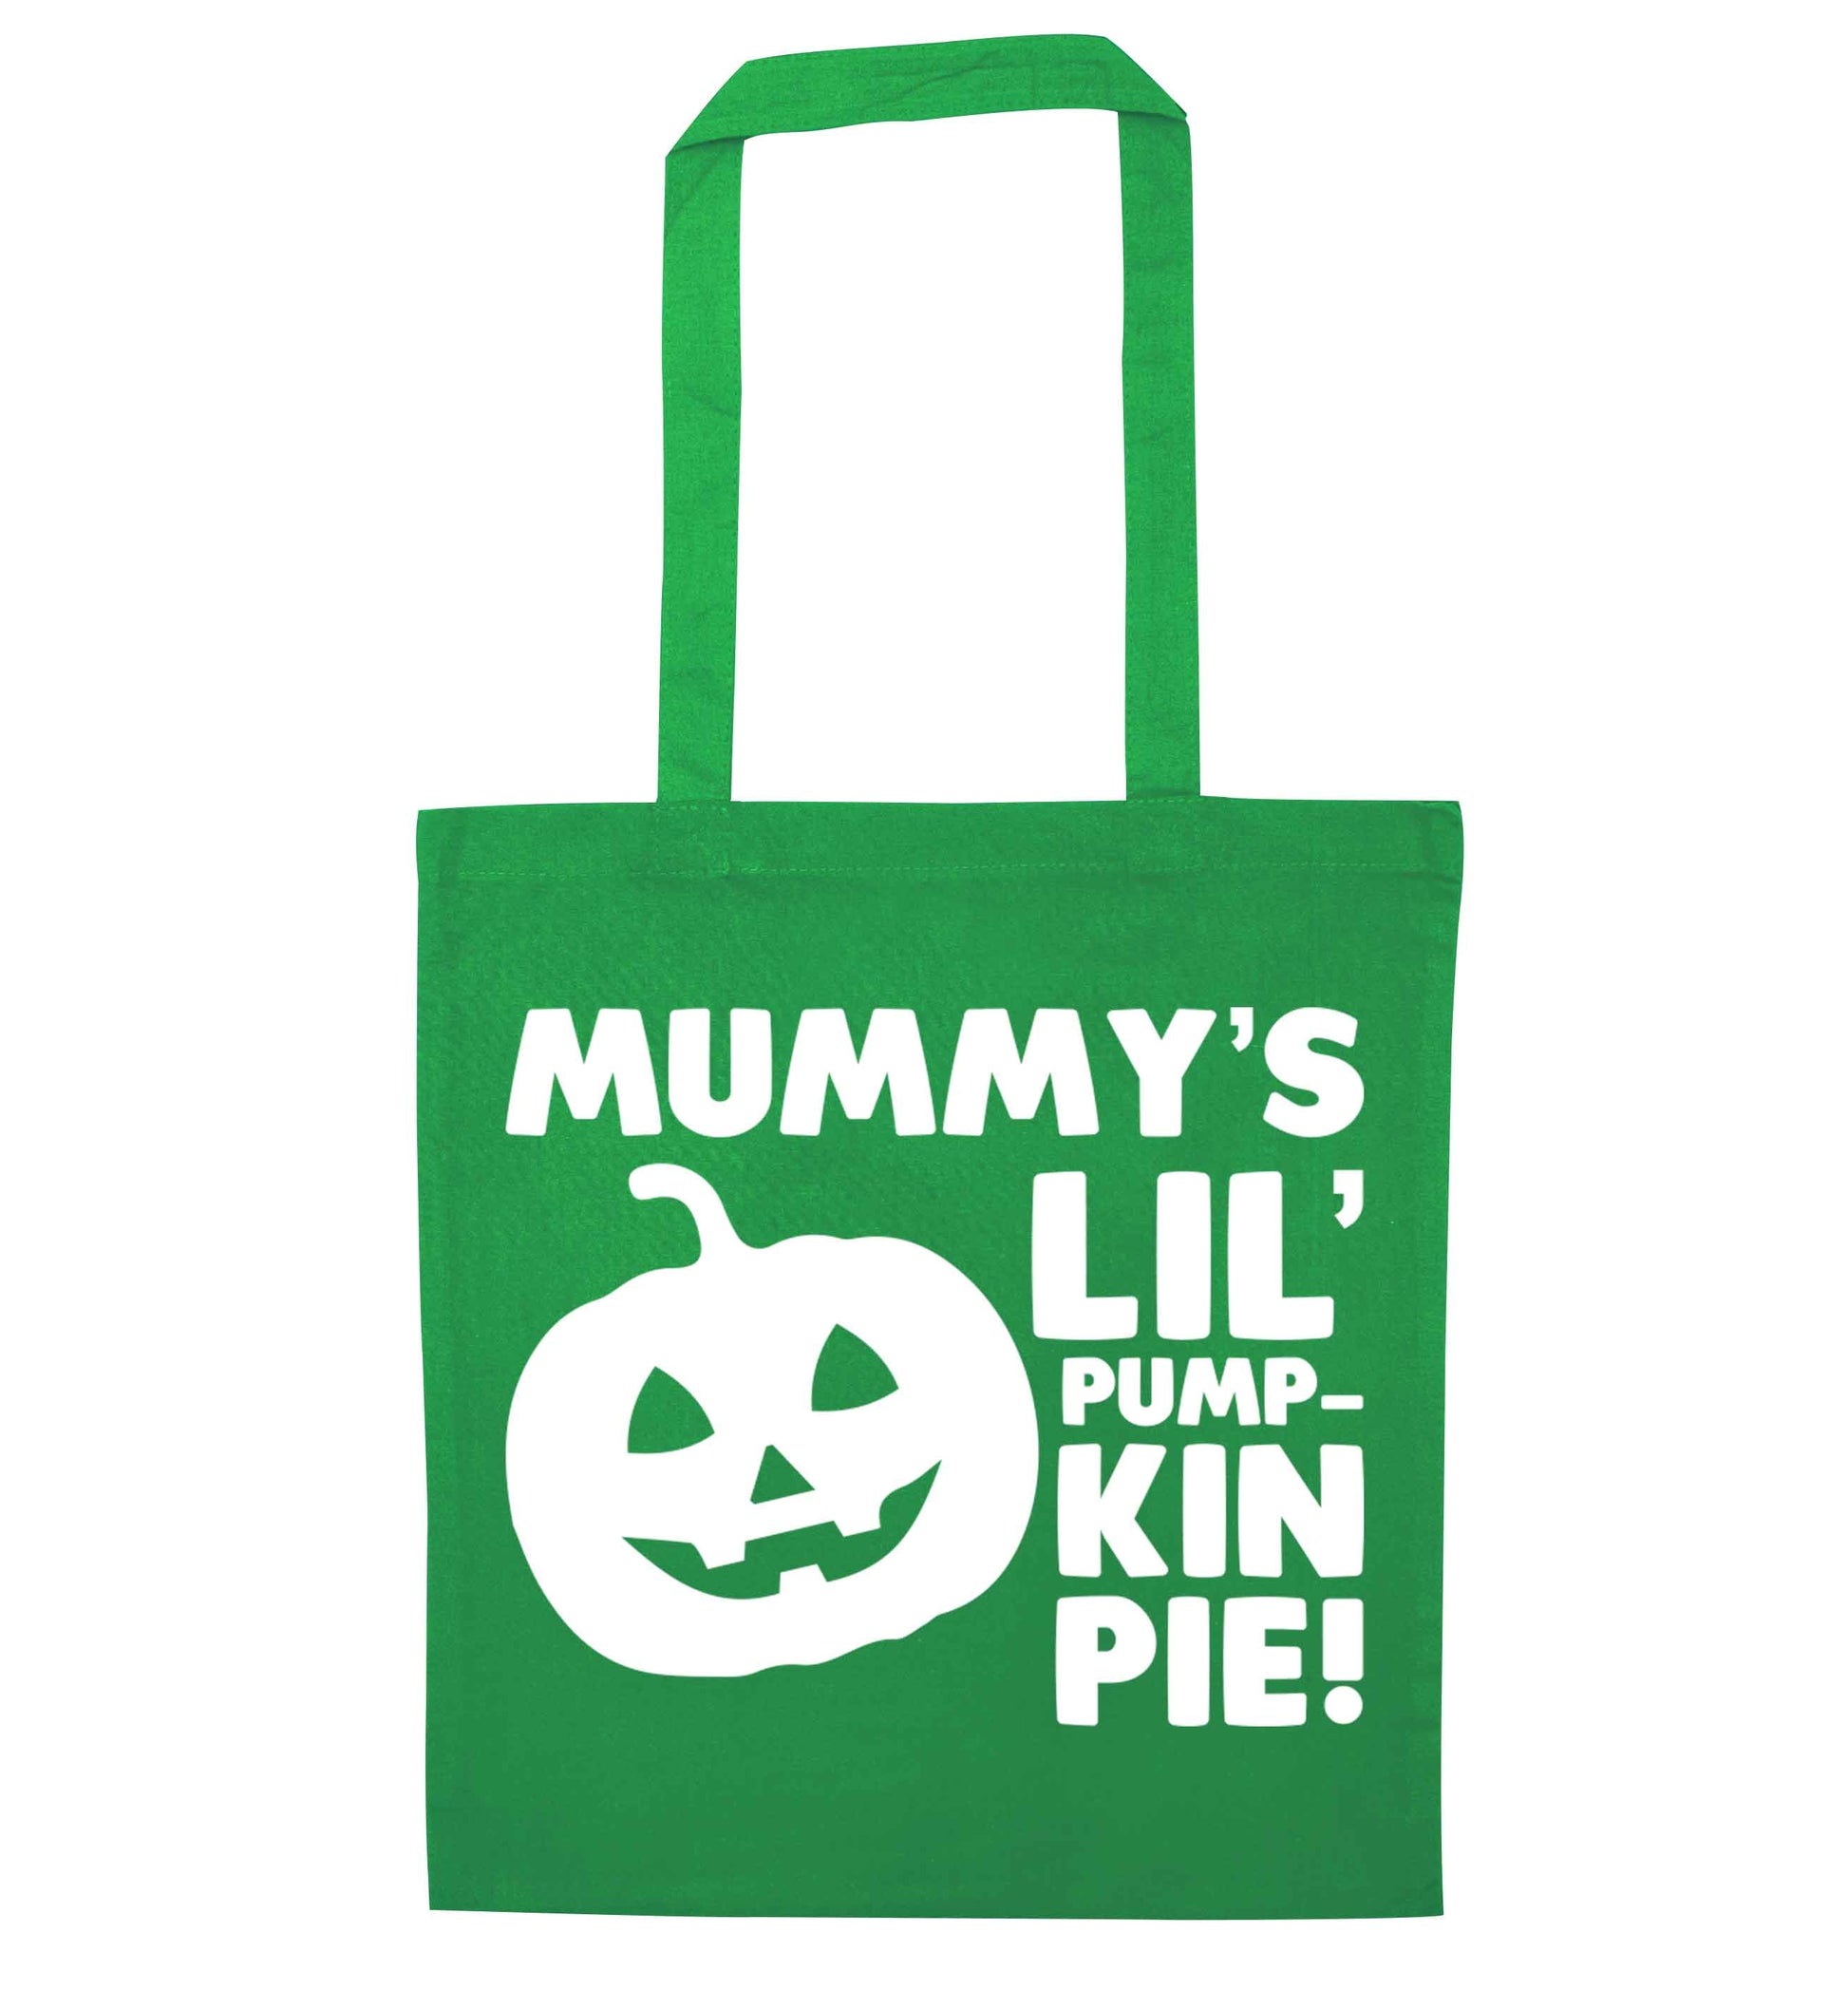 Mummy's lil' pumpkin pie green tote bag